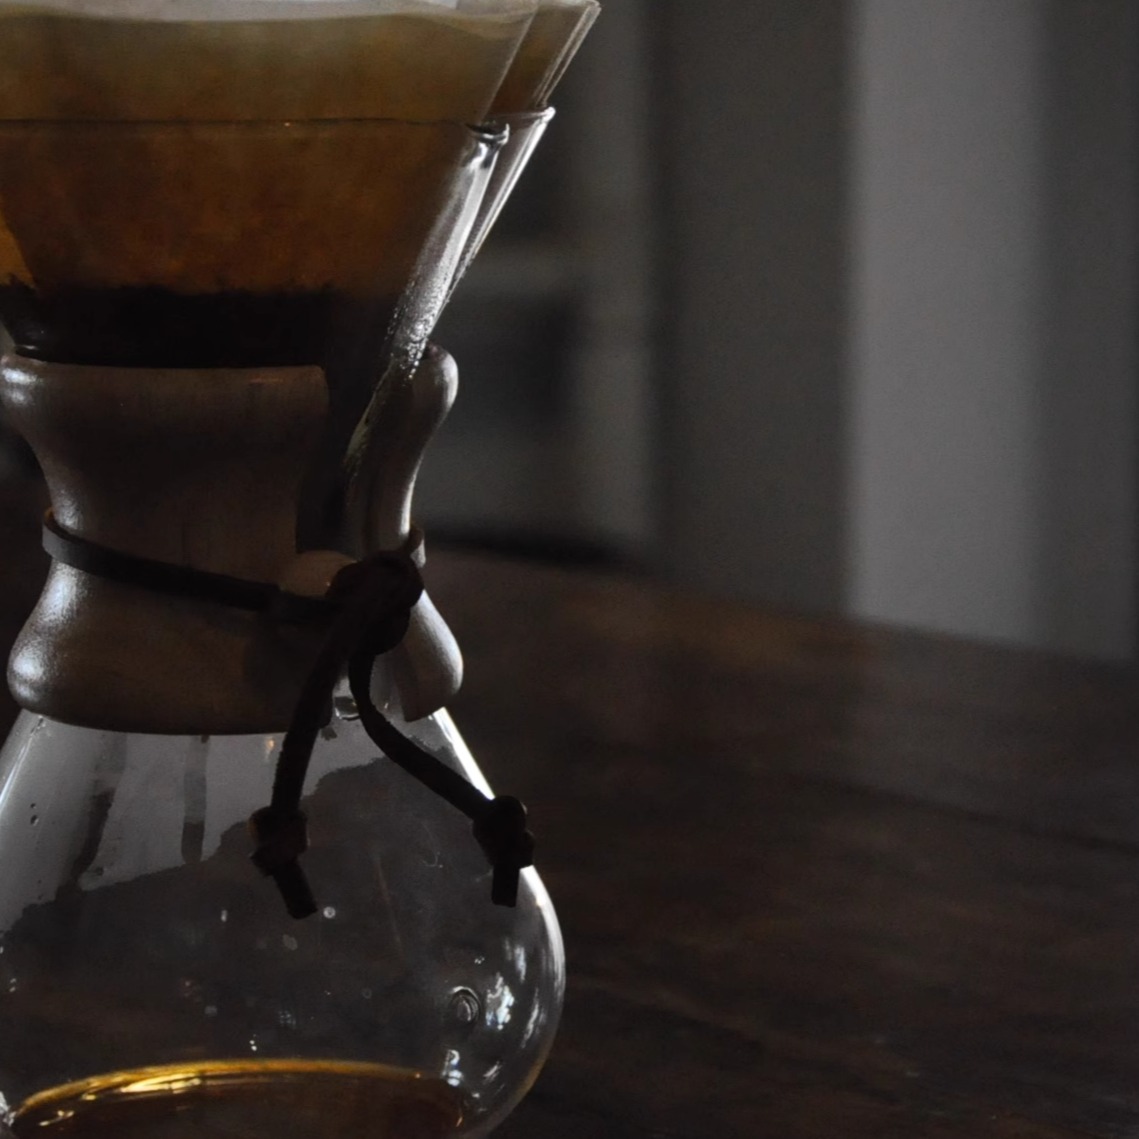 变色龙咖啡印尼黄金曼特宁湿刨处理深度烘焙手冲精品咖啡豆150克